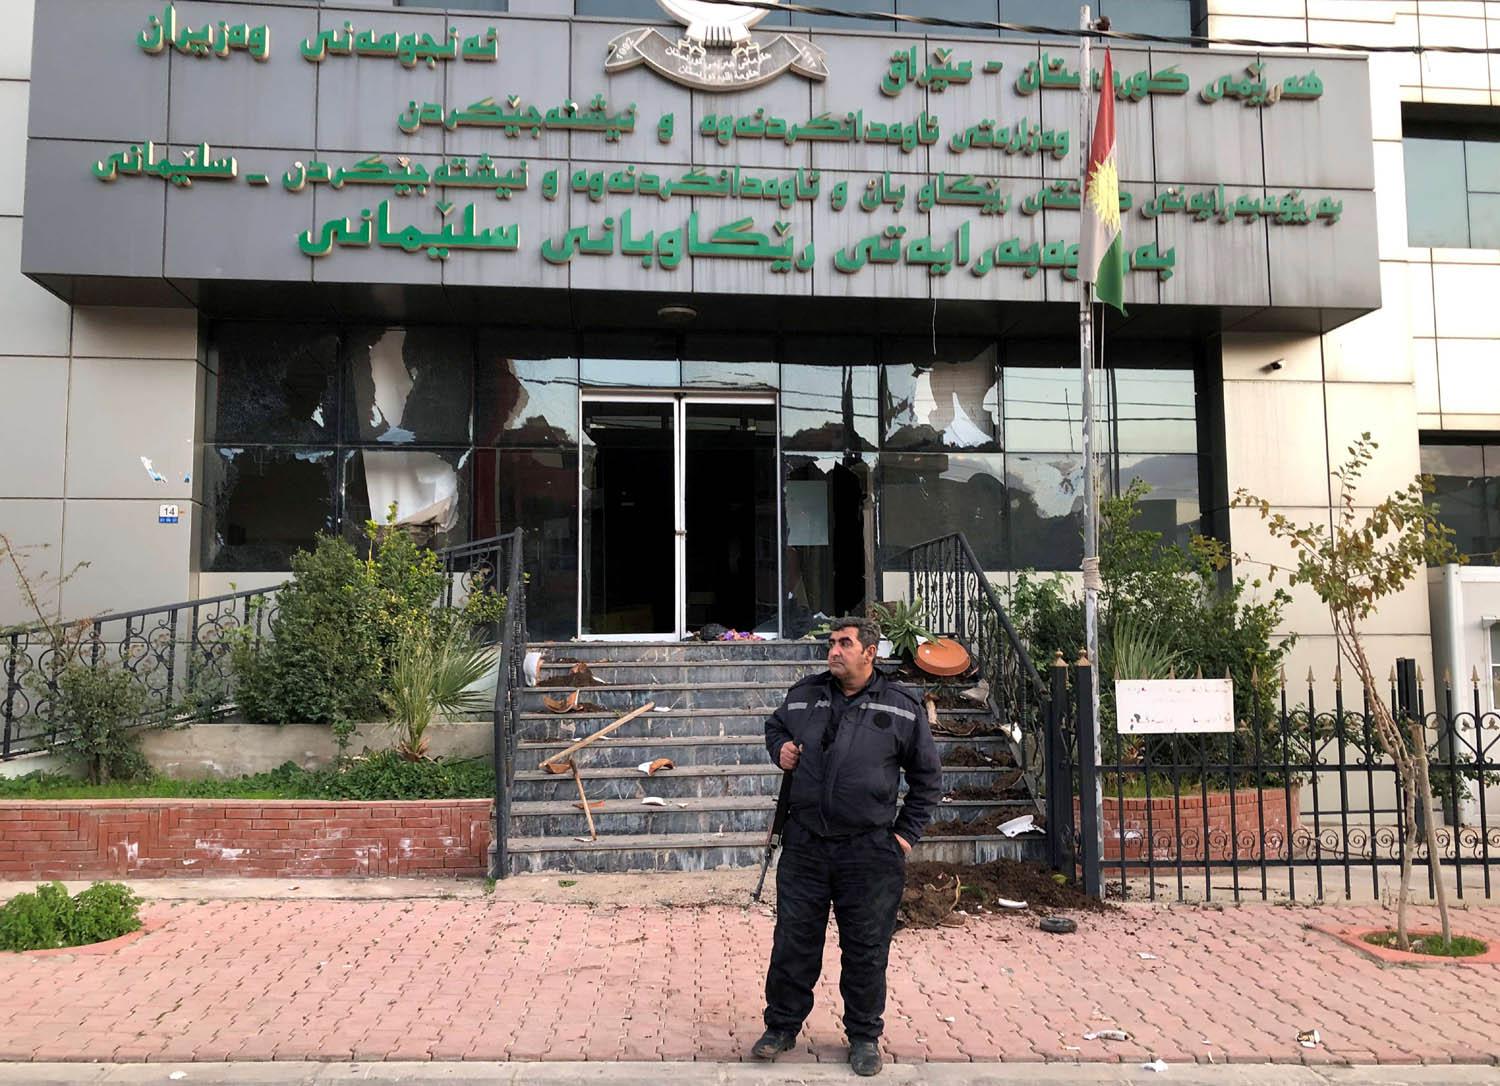 واجهات زجاجية مكسورة لدائرة طرق السليمانية في كردستان العراق